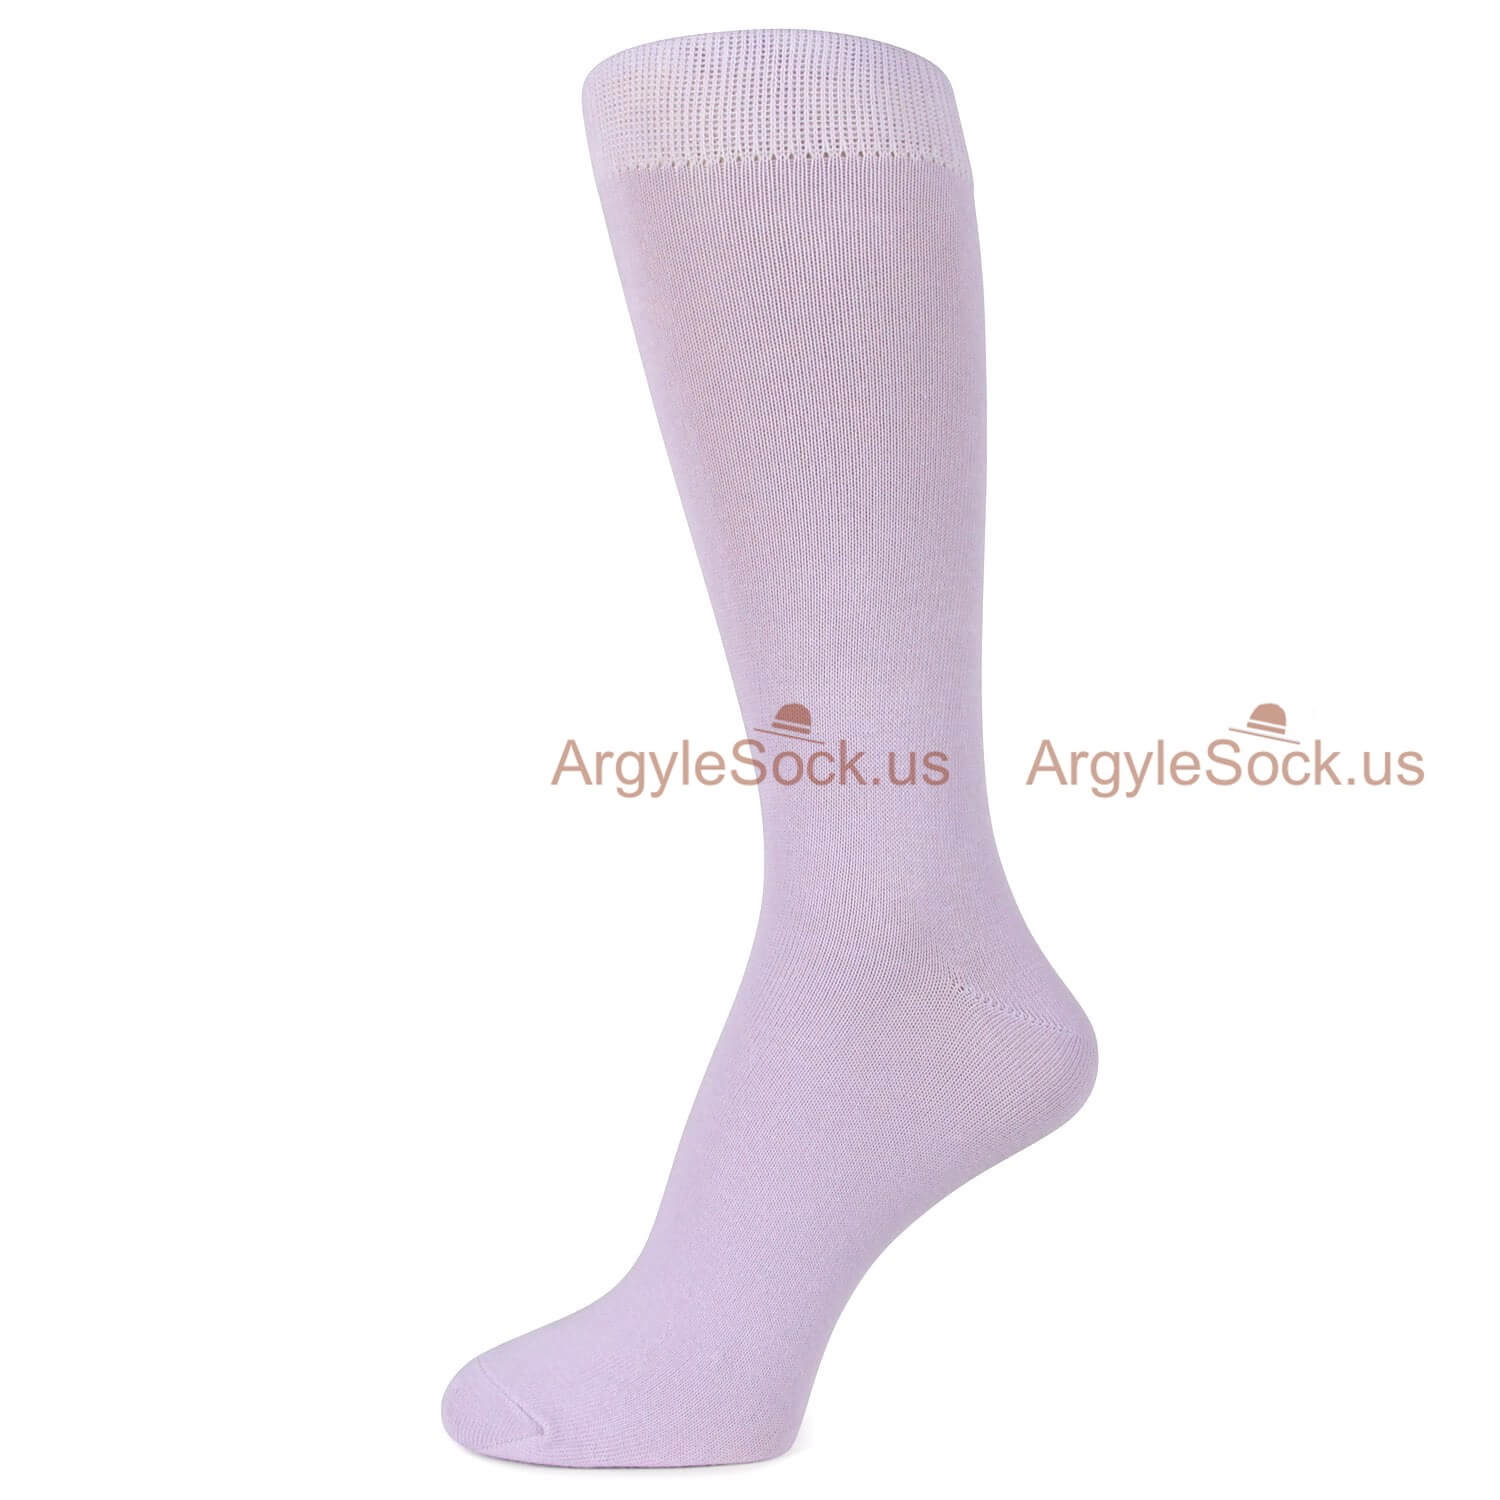 Plain Dirty White Socks for Men